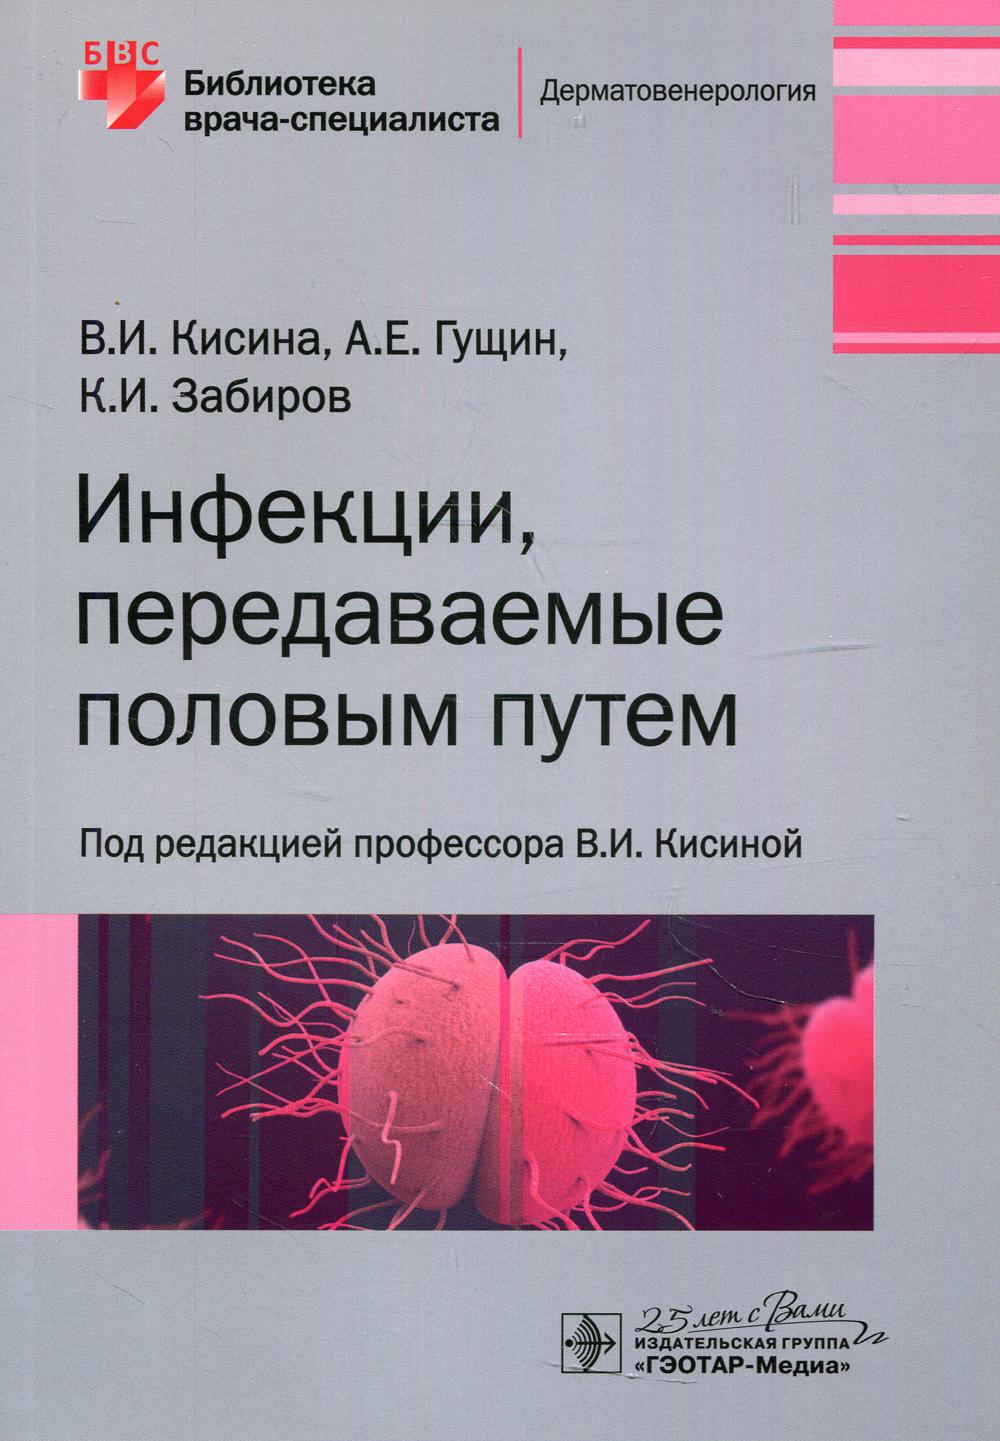 фото Книга инфекции, передаваемые половым путем гэотар-медиа